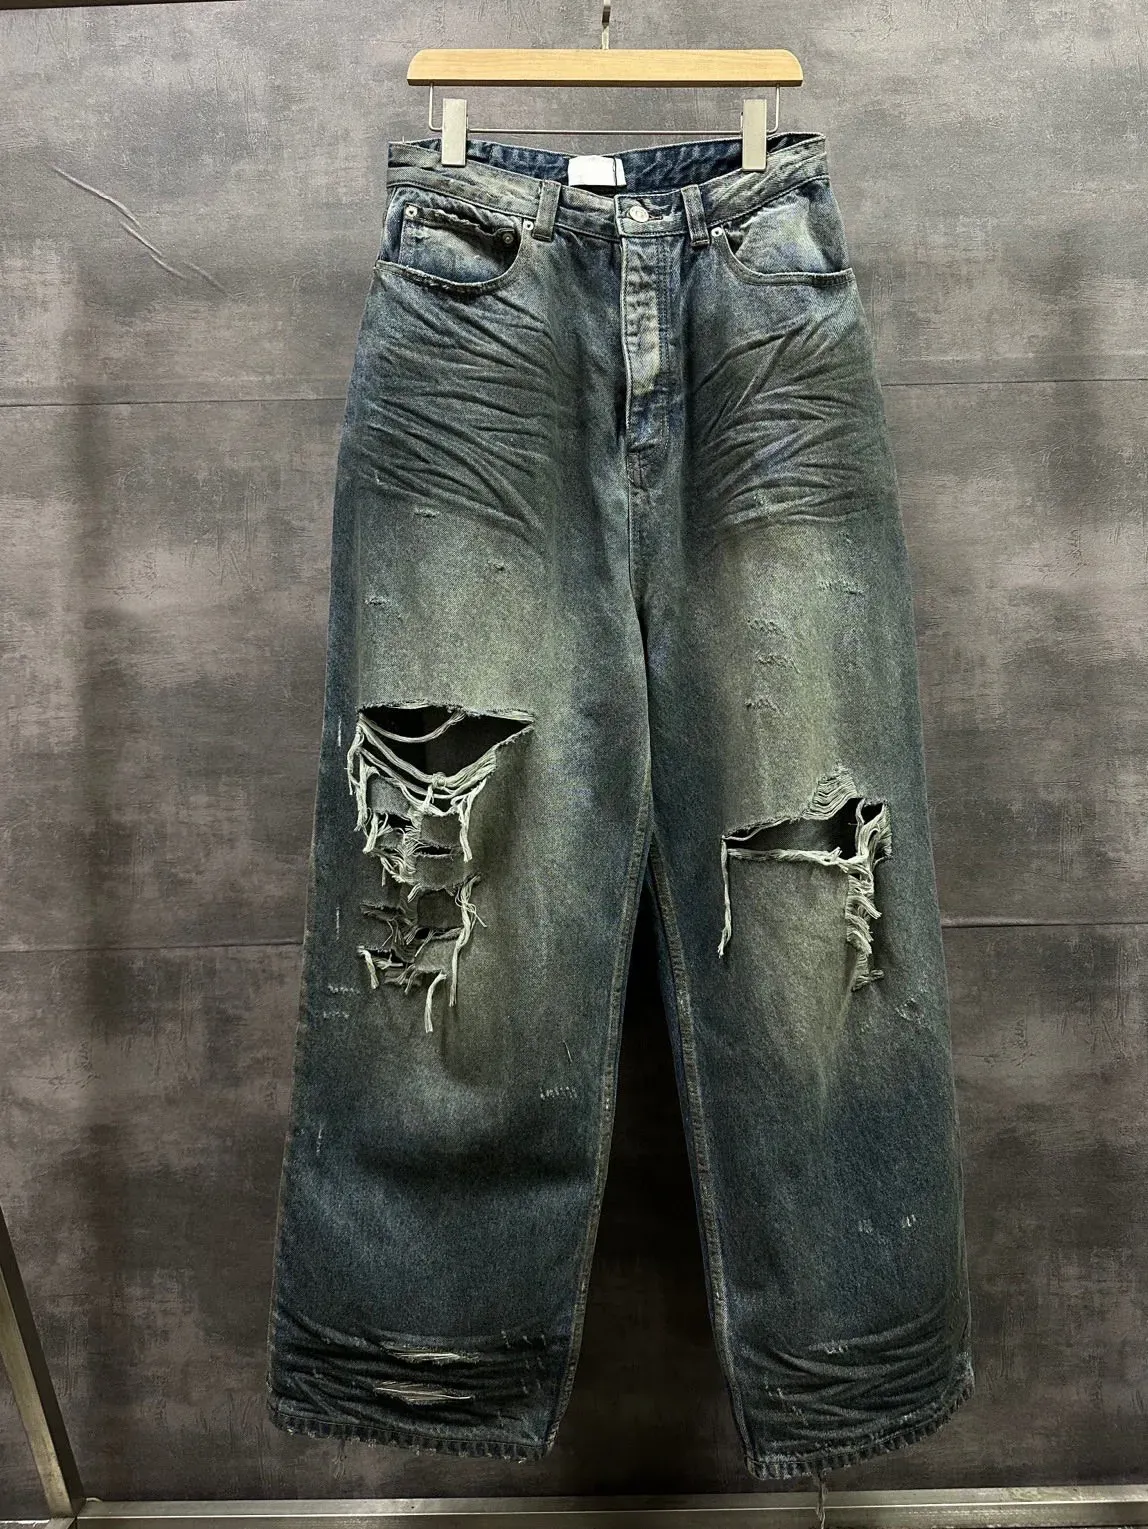 Pantaloni Pantaloni taglie forti da uomo Girocollo ricamato e stampato in stile polare estivo con puro cotone da strada 54t2